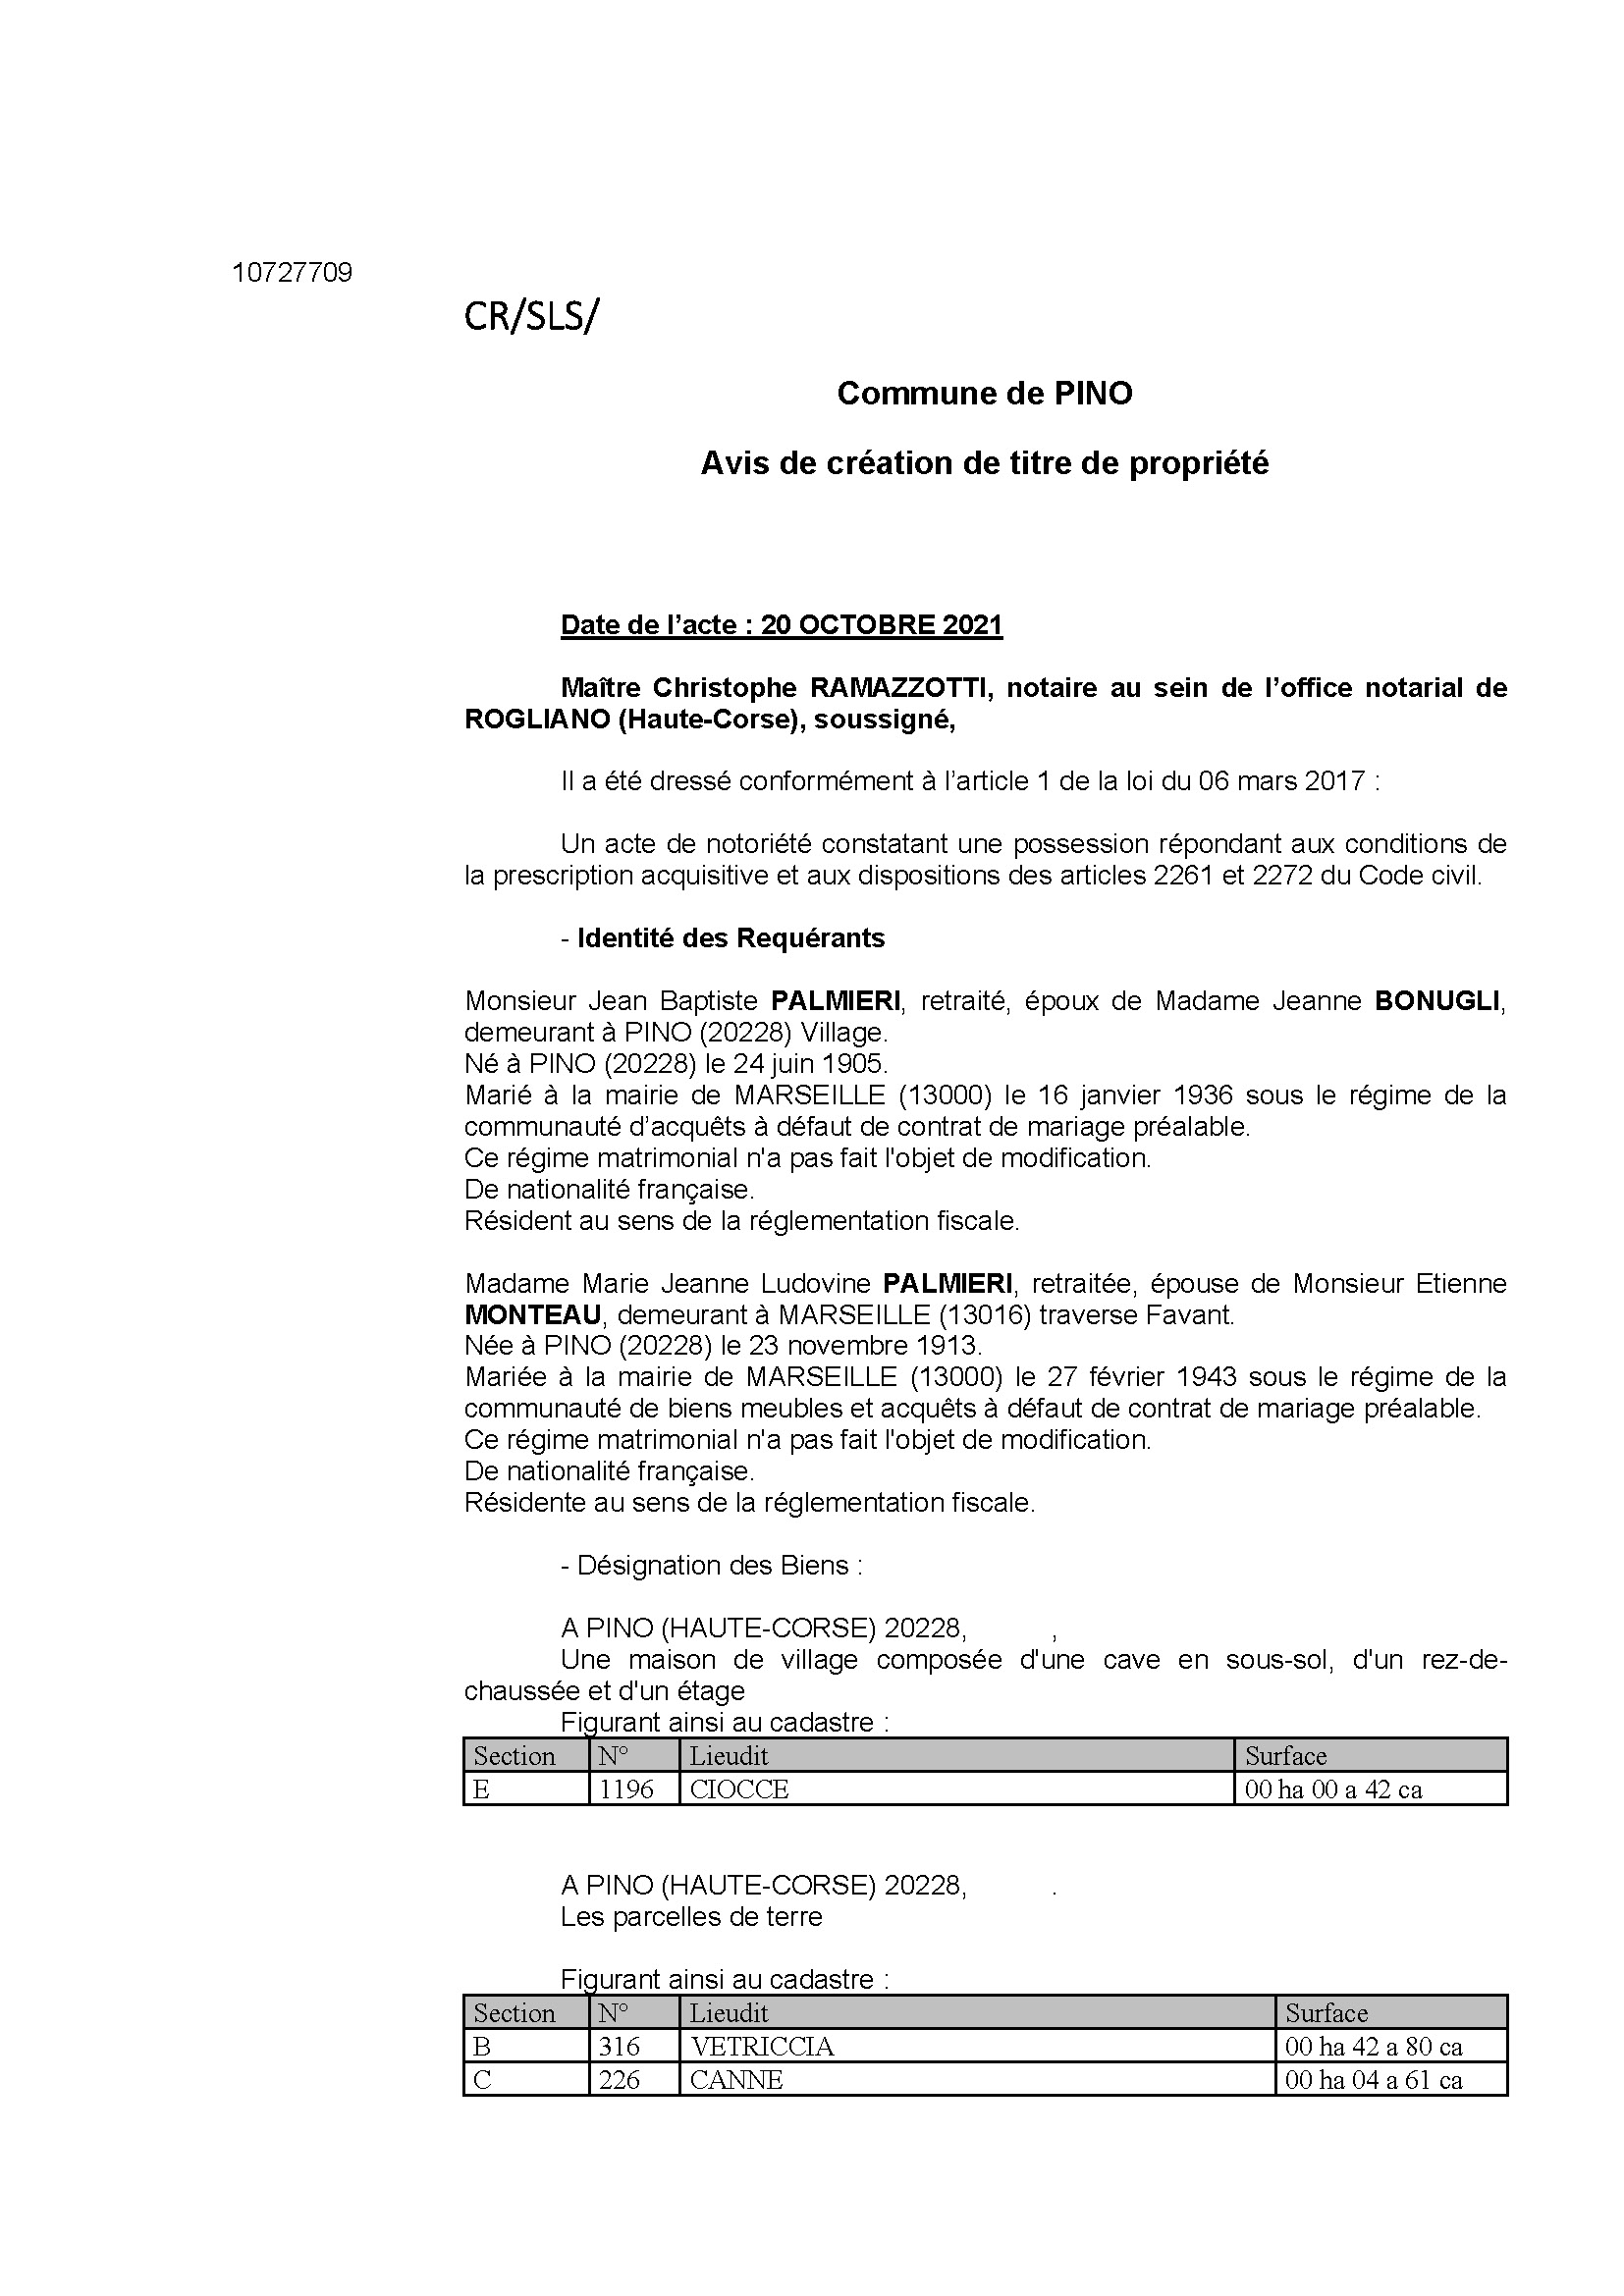 Avis de création de titre de propriété - Commune de Pino (Haute-Corse)